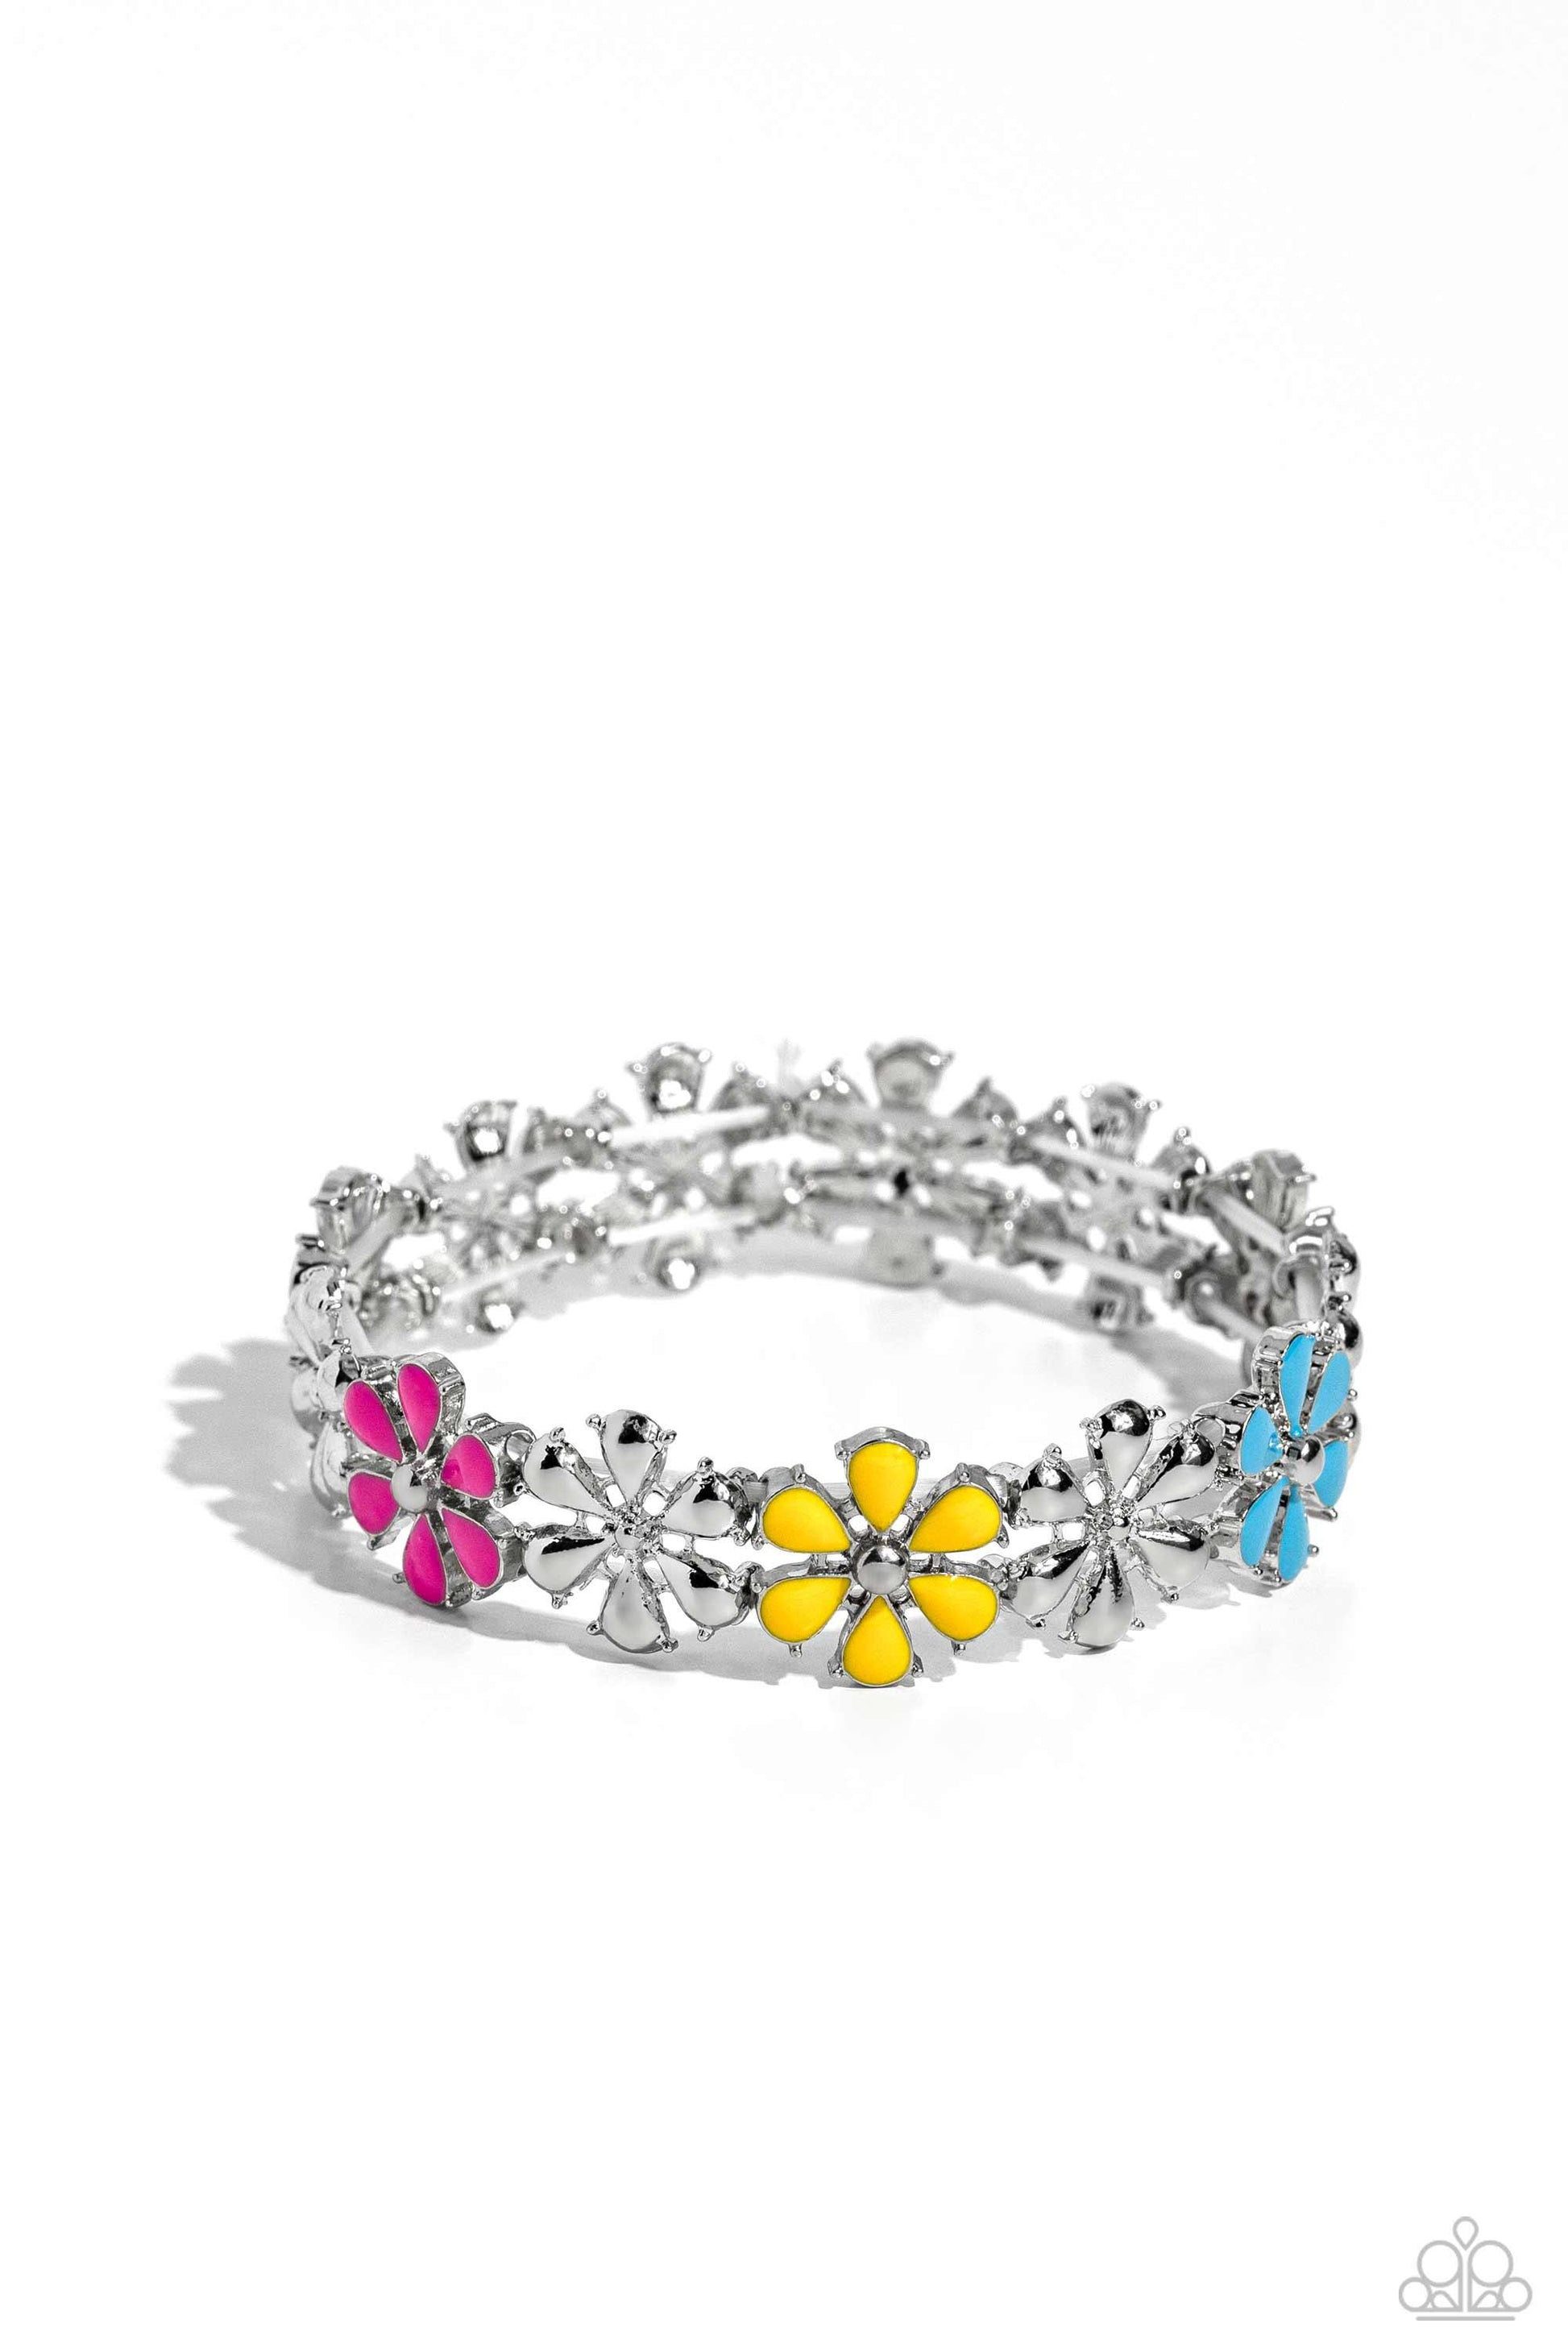 Paparazzi Accessories - Floral Fair - Multicolor Bracelet - Bling by JessieK